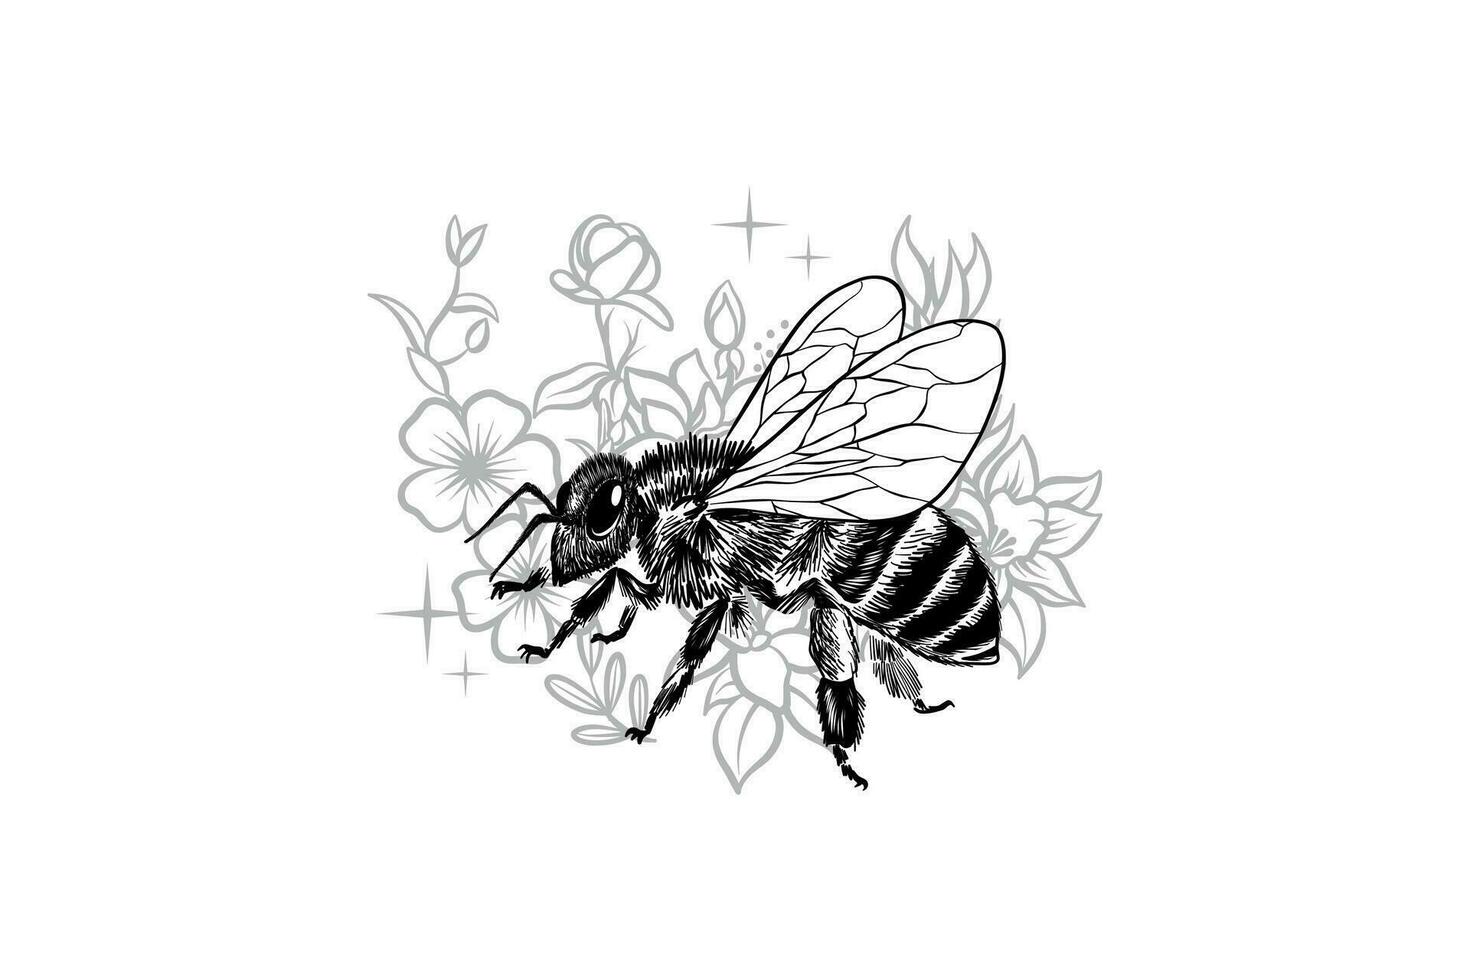 zwart en wit vector illustratie van bijen en bloemen